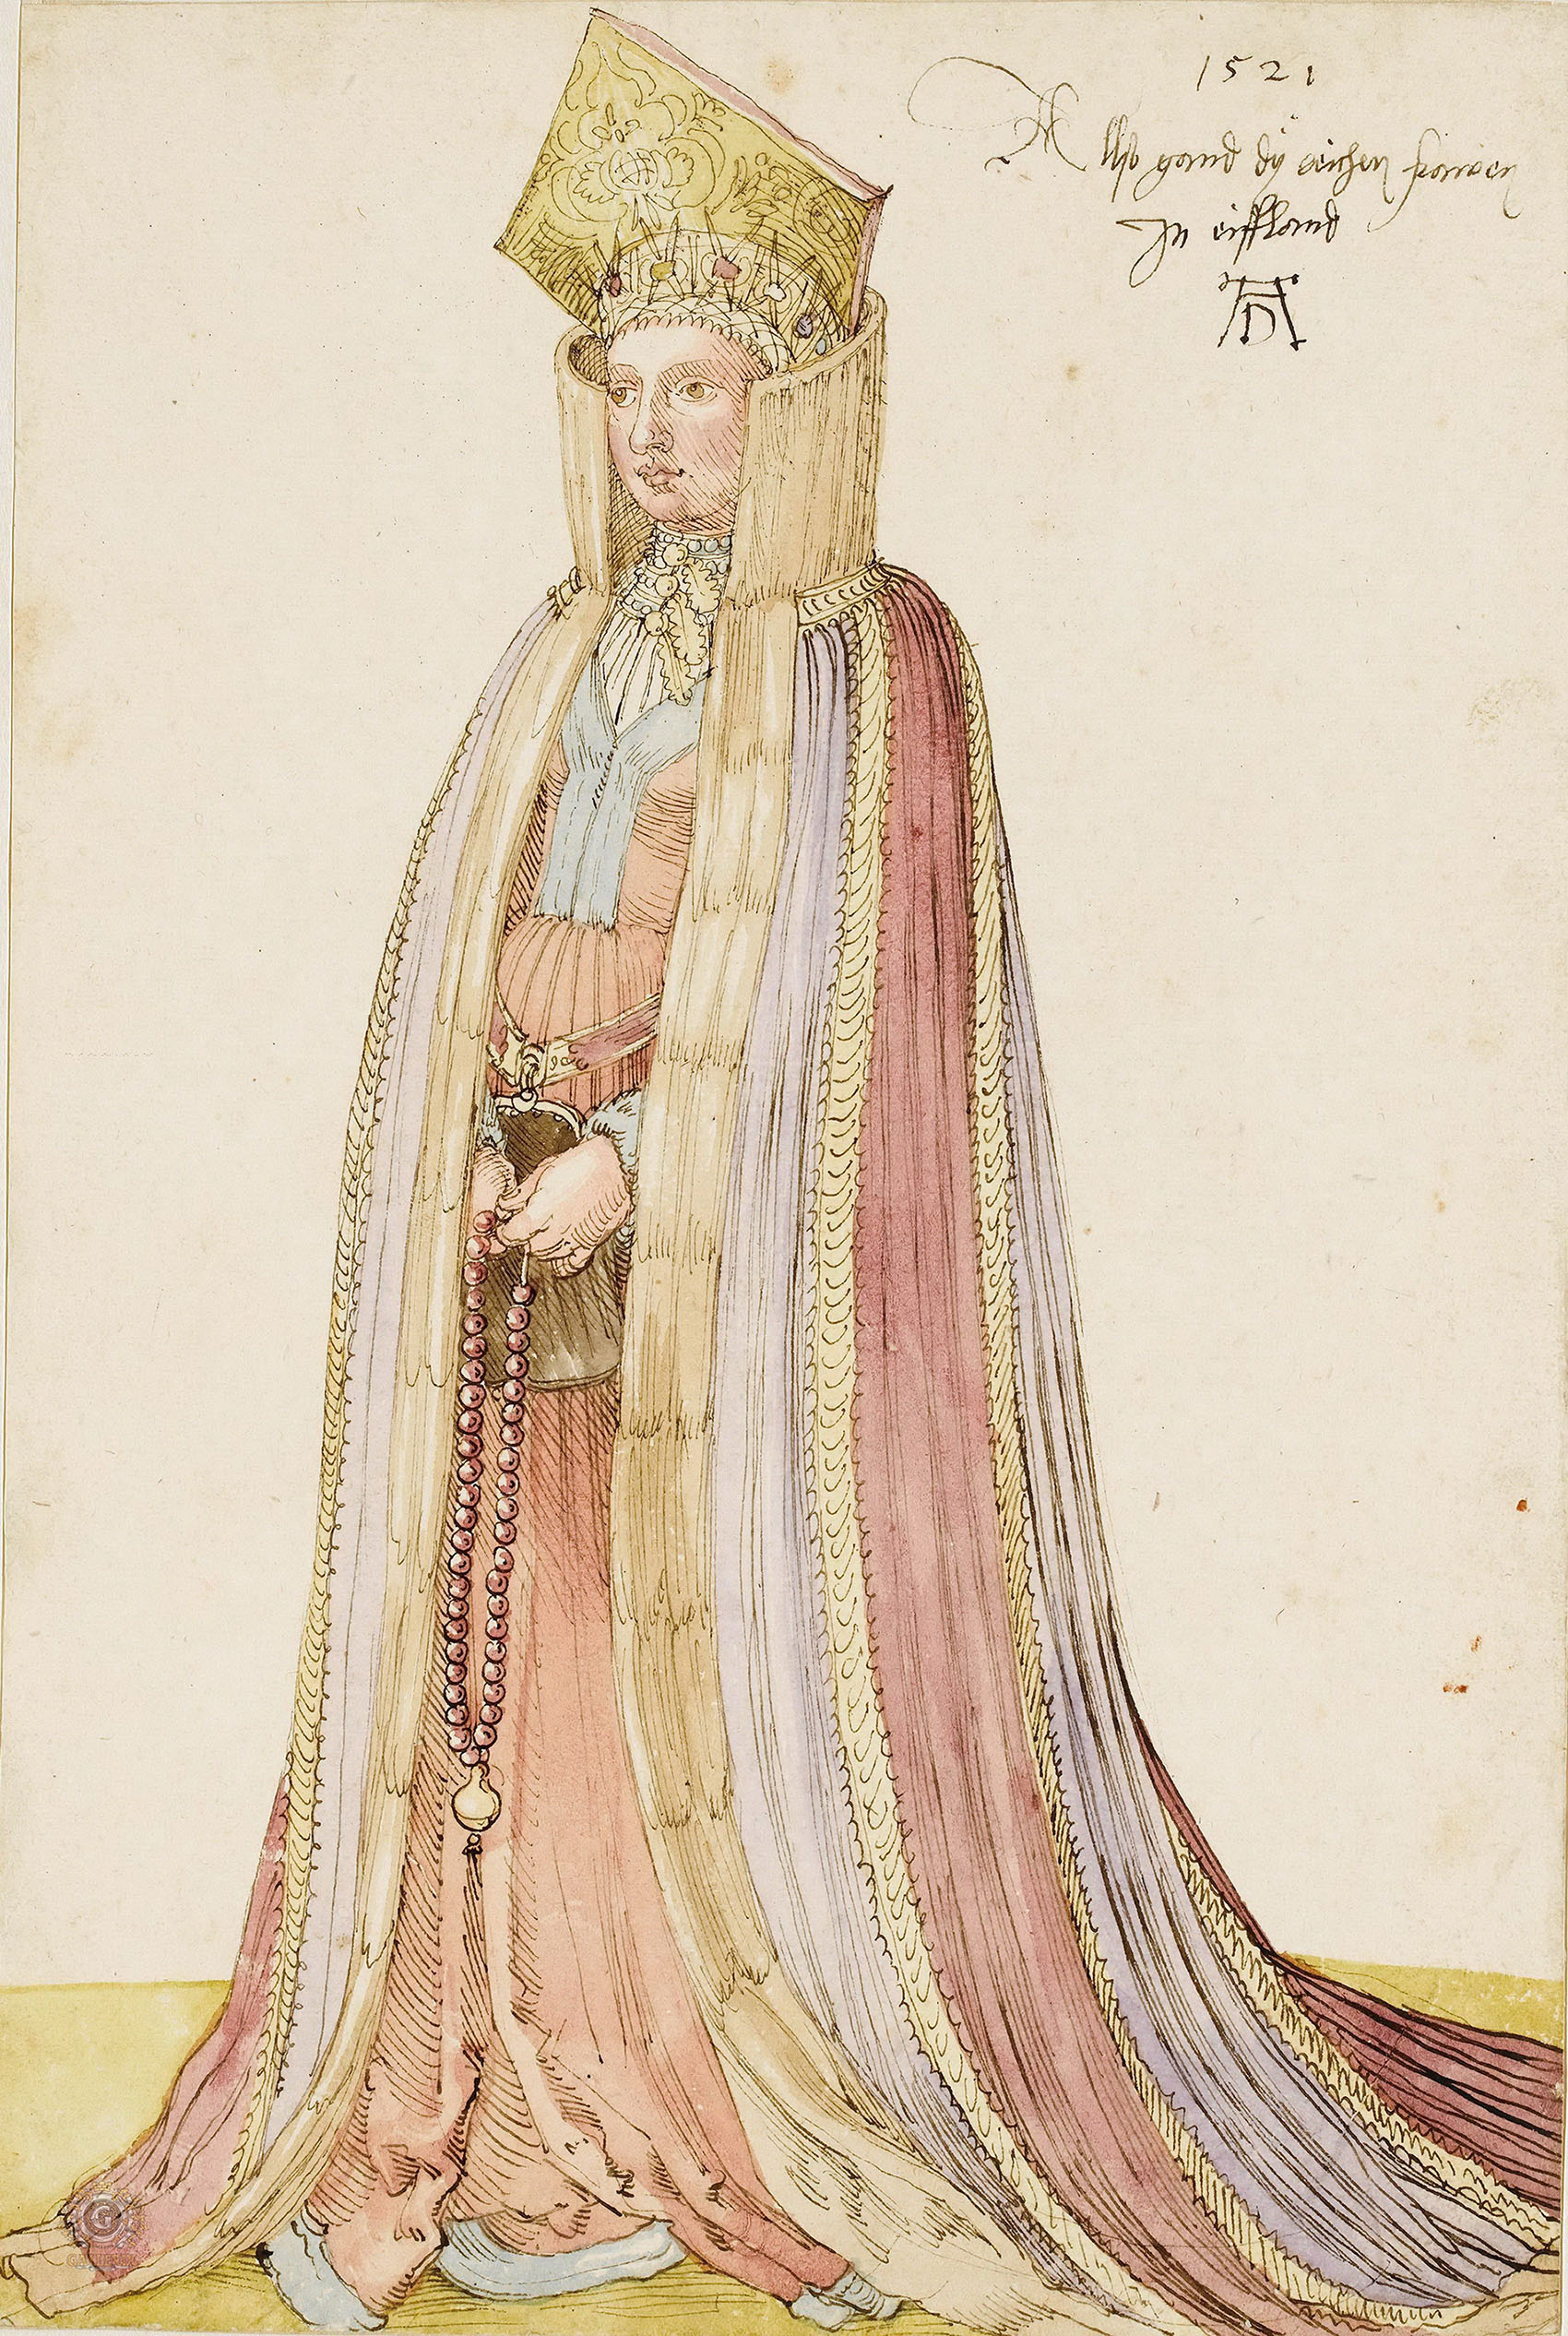 Альбрехт Дюрер. "Наряд ливонской женщины". 1521. Лувр, Париж.